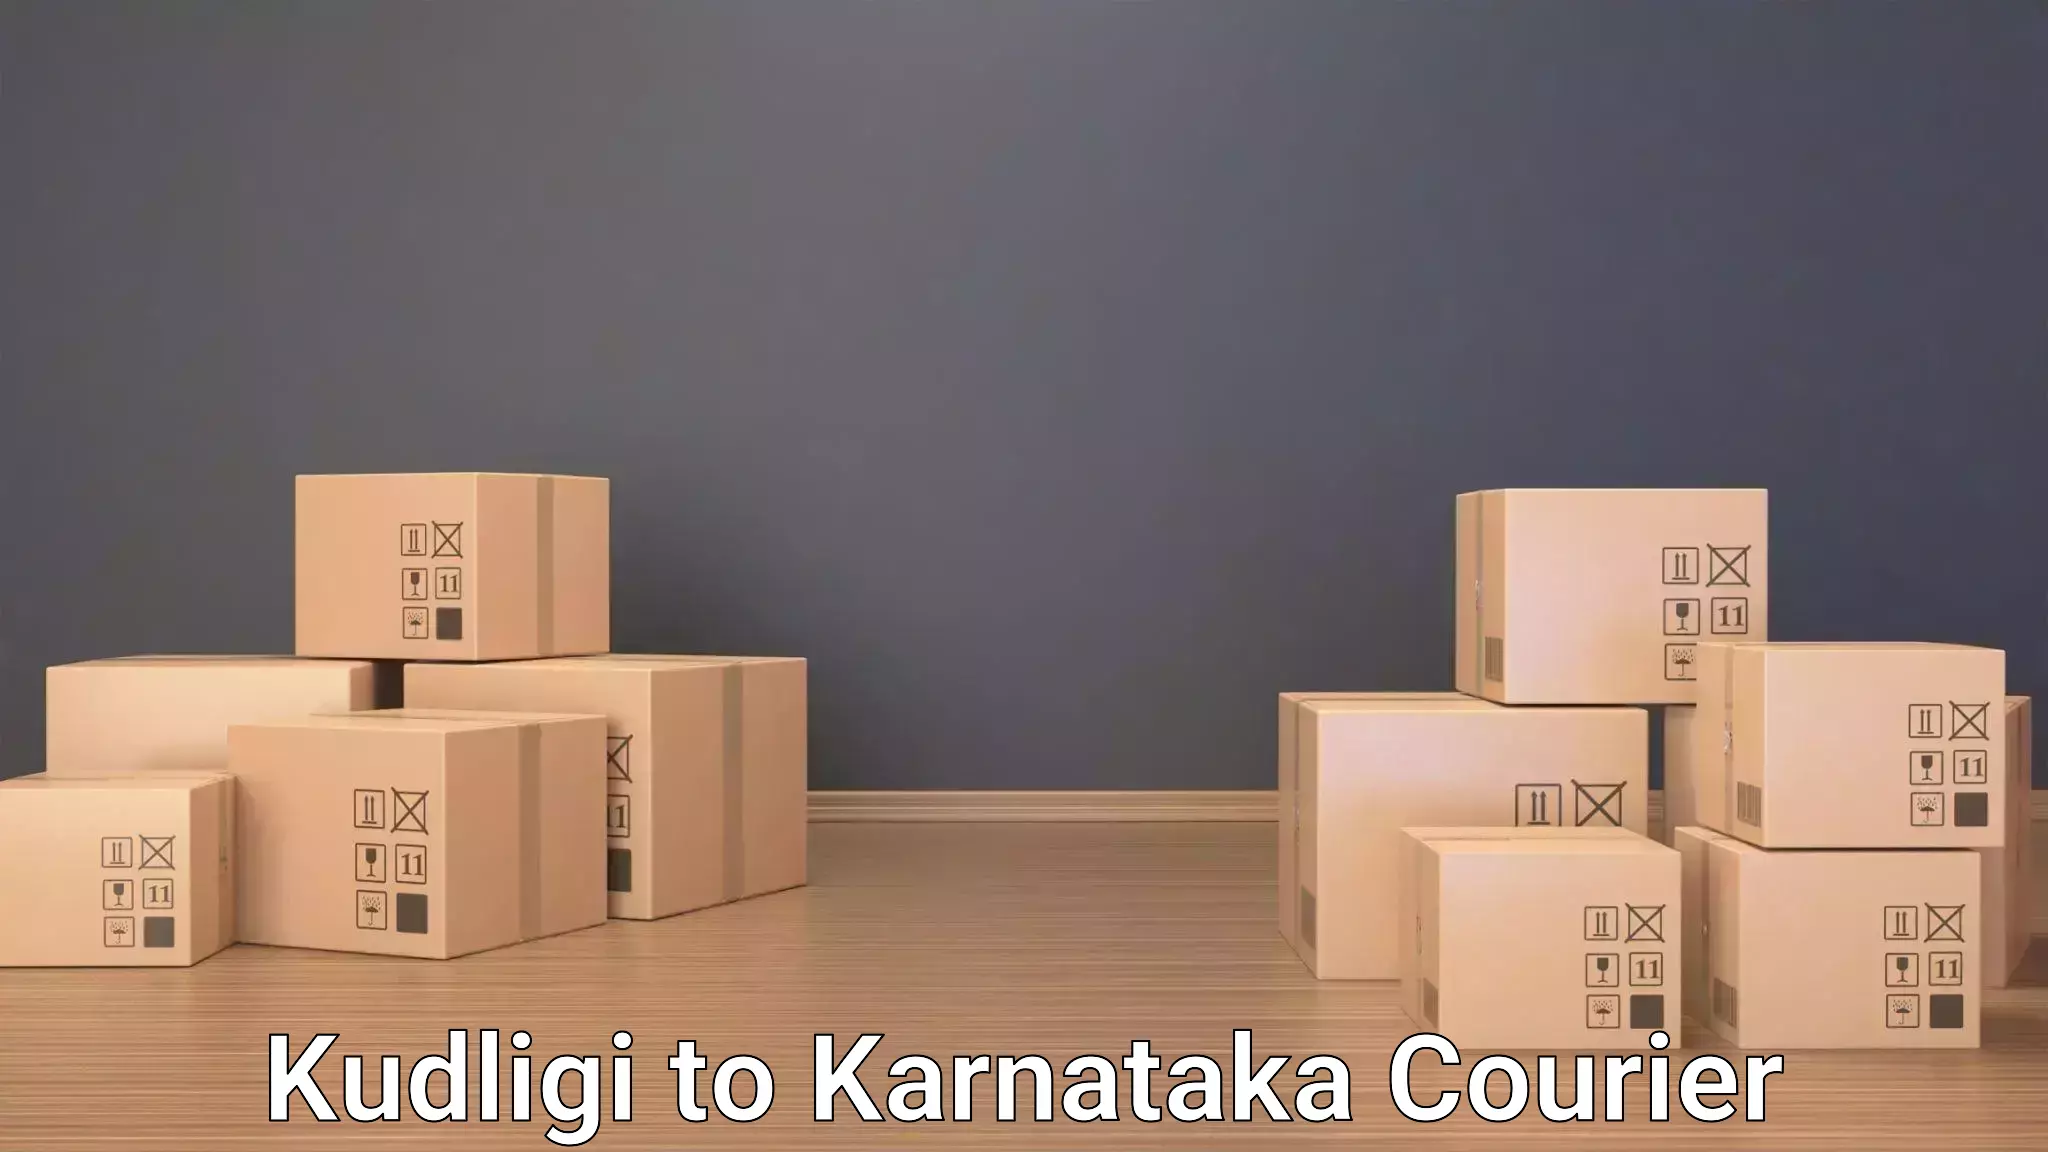 Express luggage delivery Kudligi to Karnataka